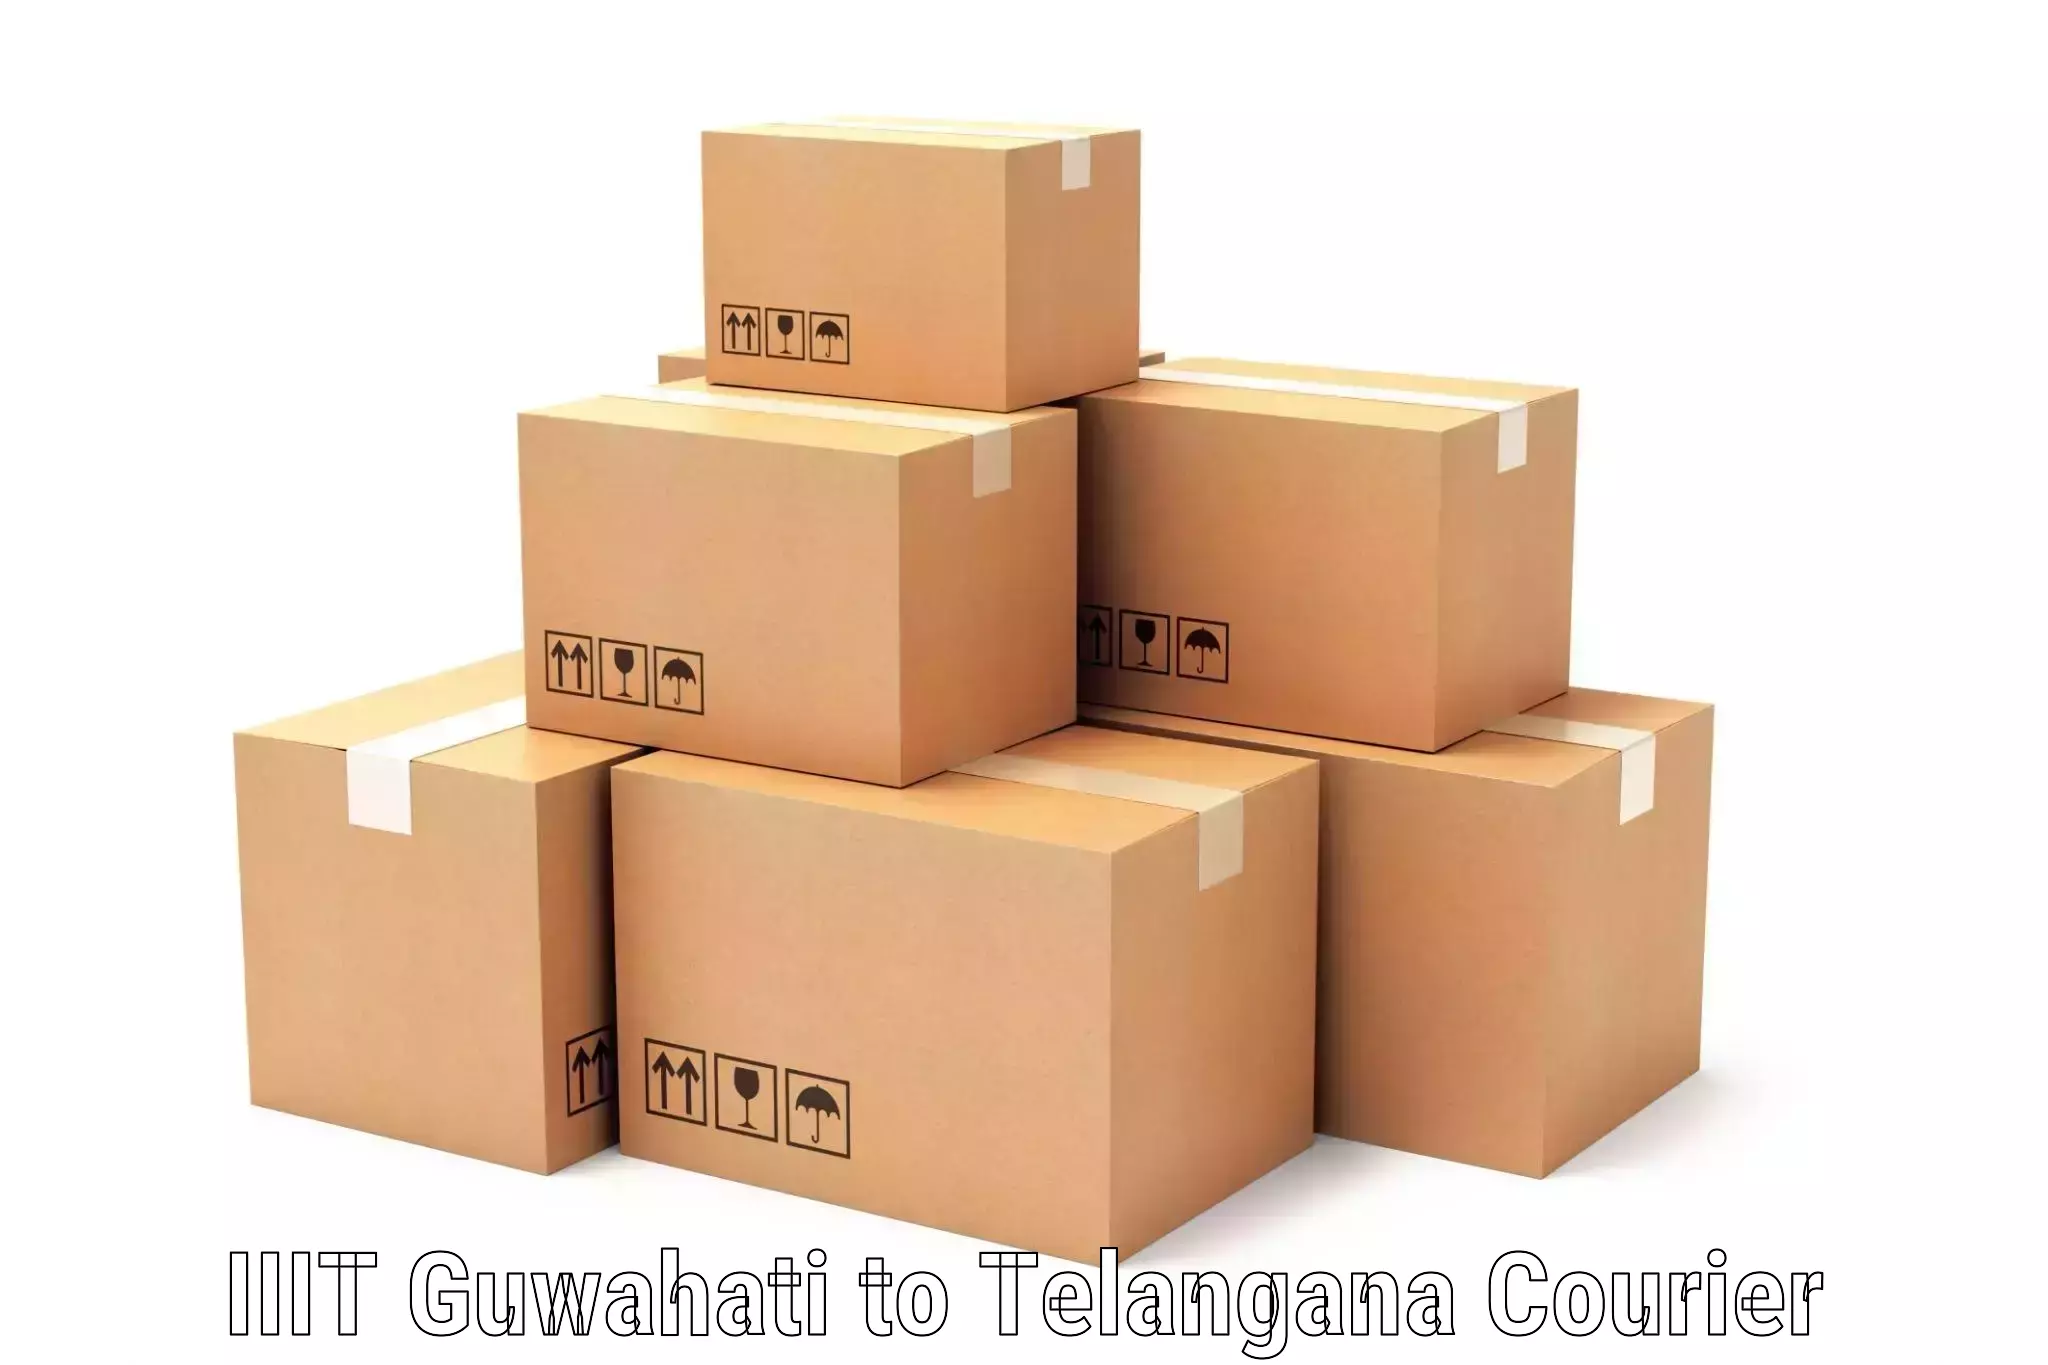 Efficient parcel service IIIT Guwahati to Allapalli